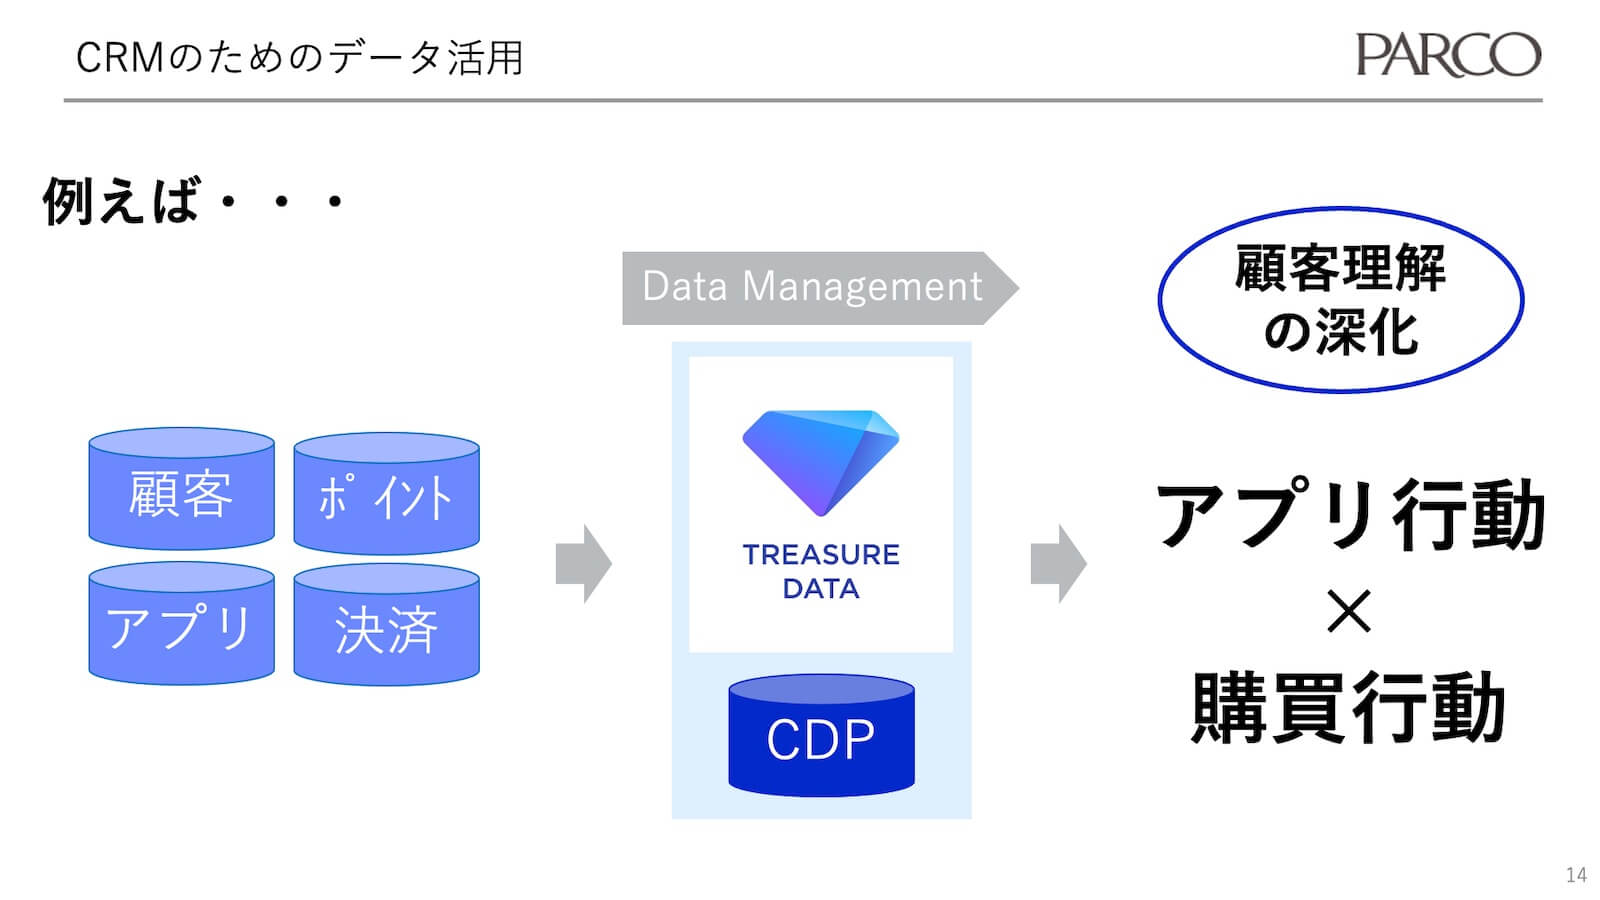 CRMのためのデータ活用-パルコがCDPを使う2つの理由-2